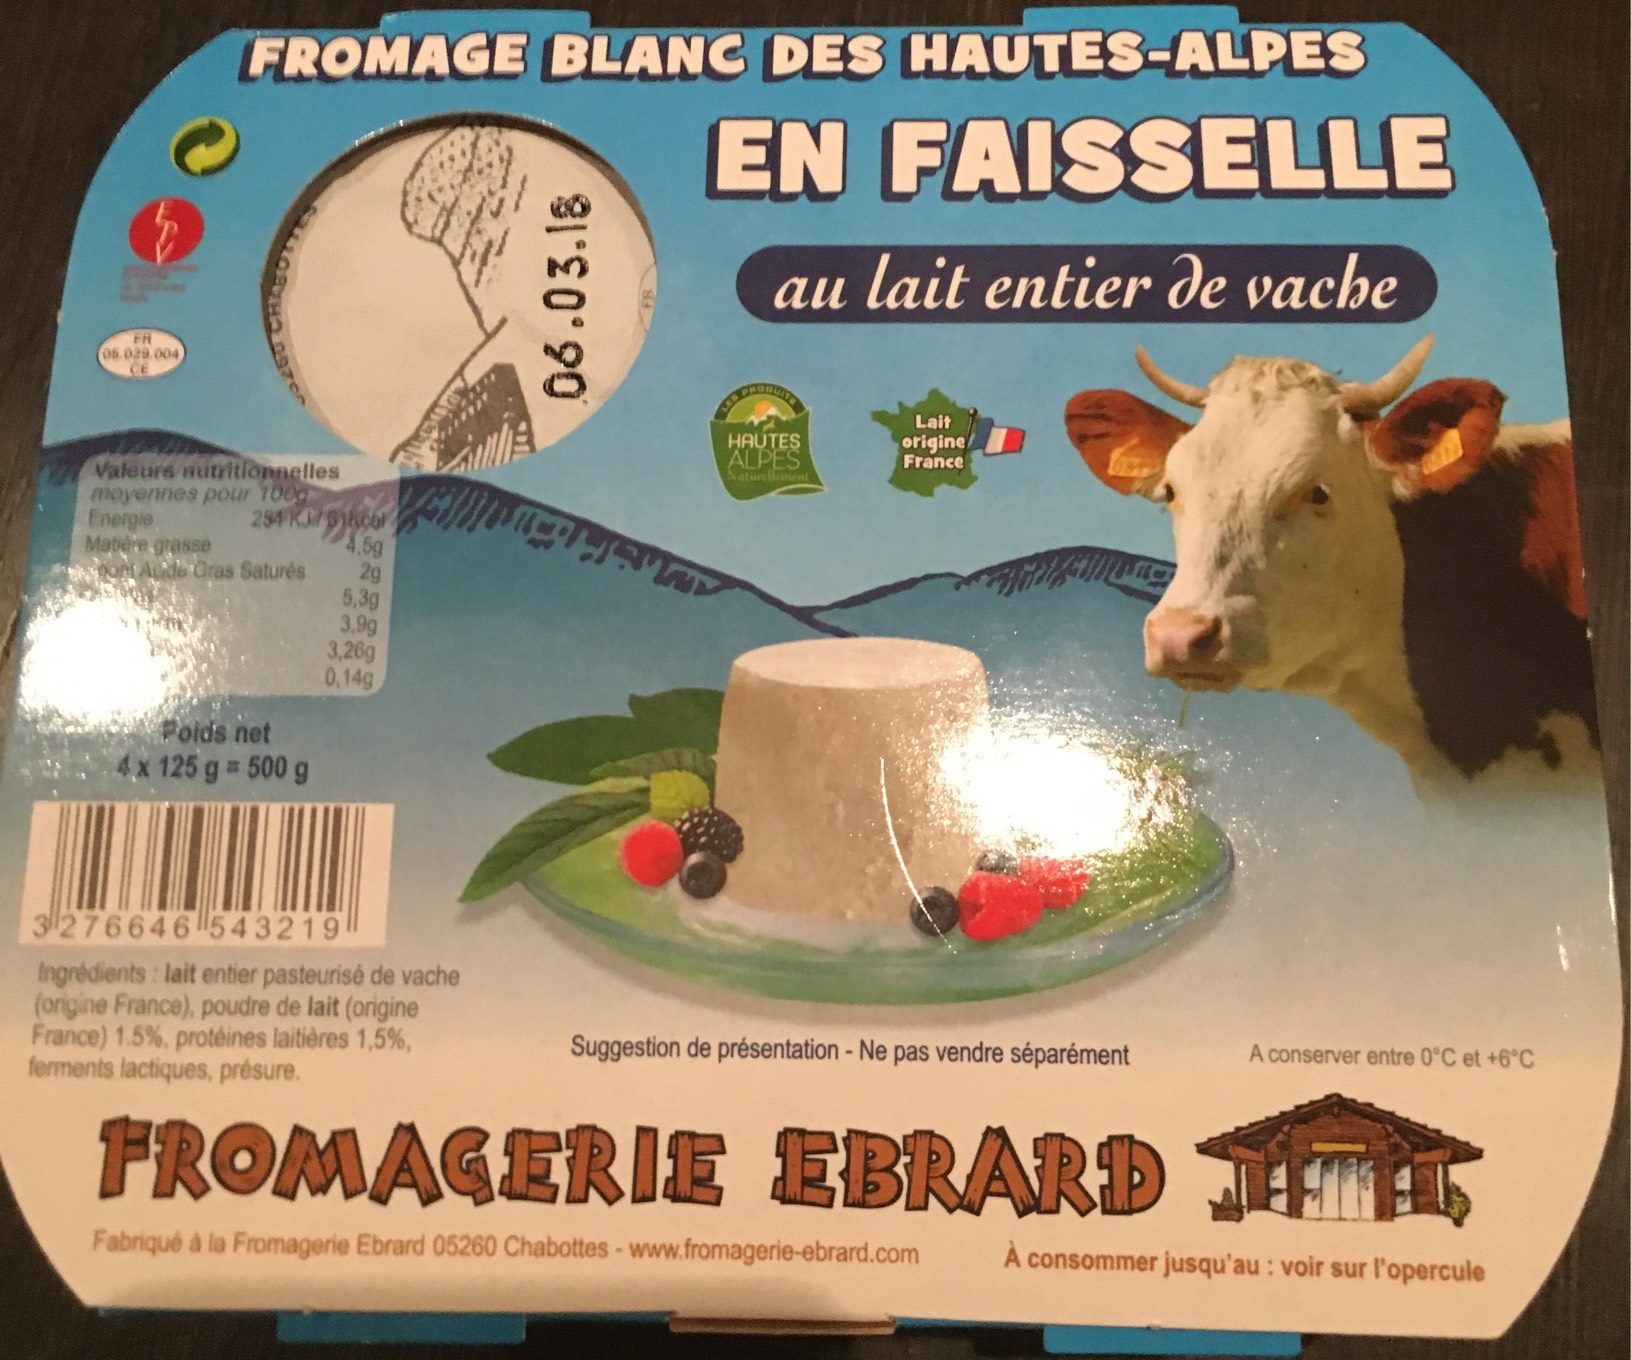 Fromage blanc des Hautes-Alpes en faisselle au lait entier de vache - Product - fr